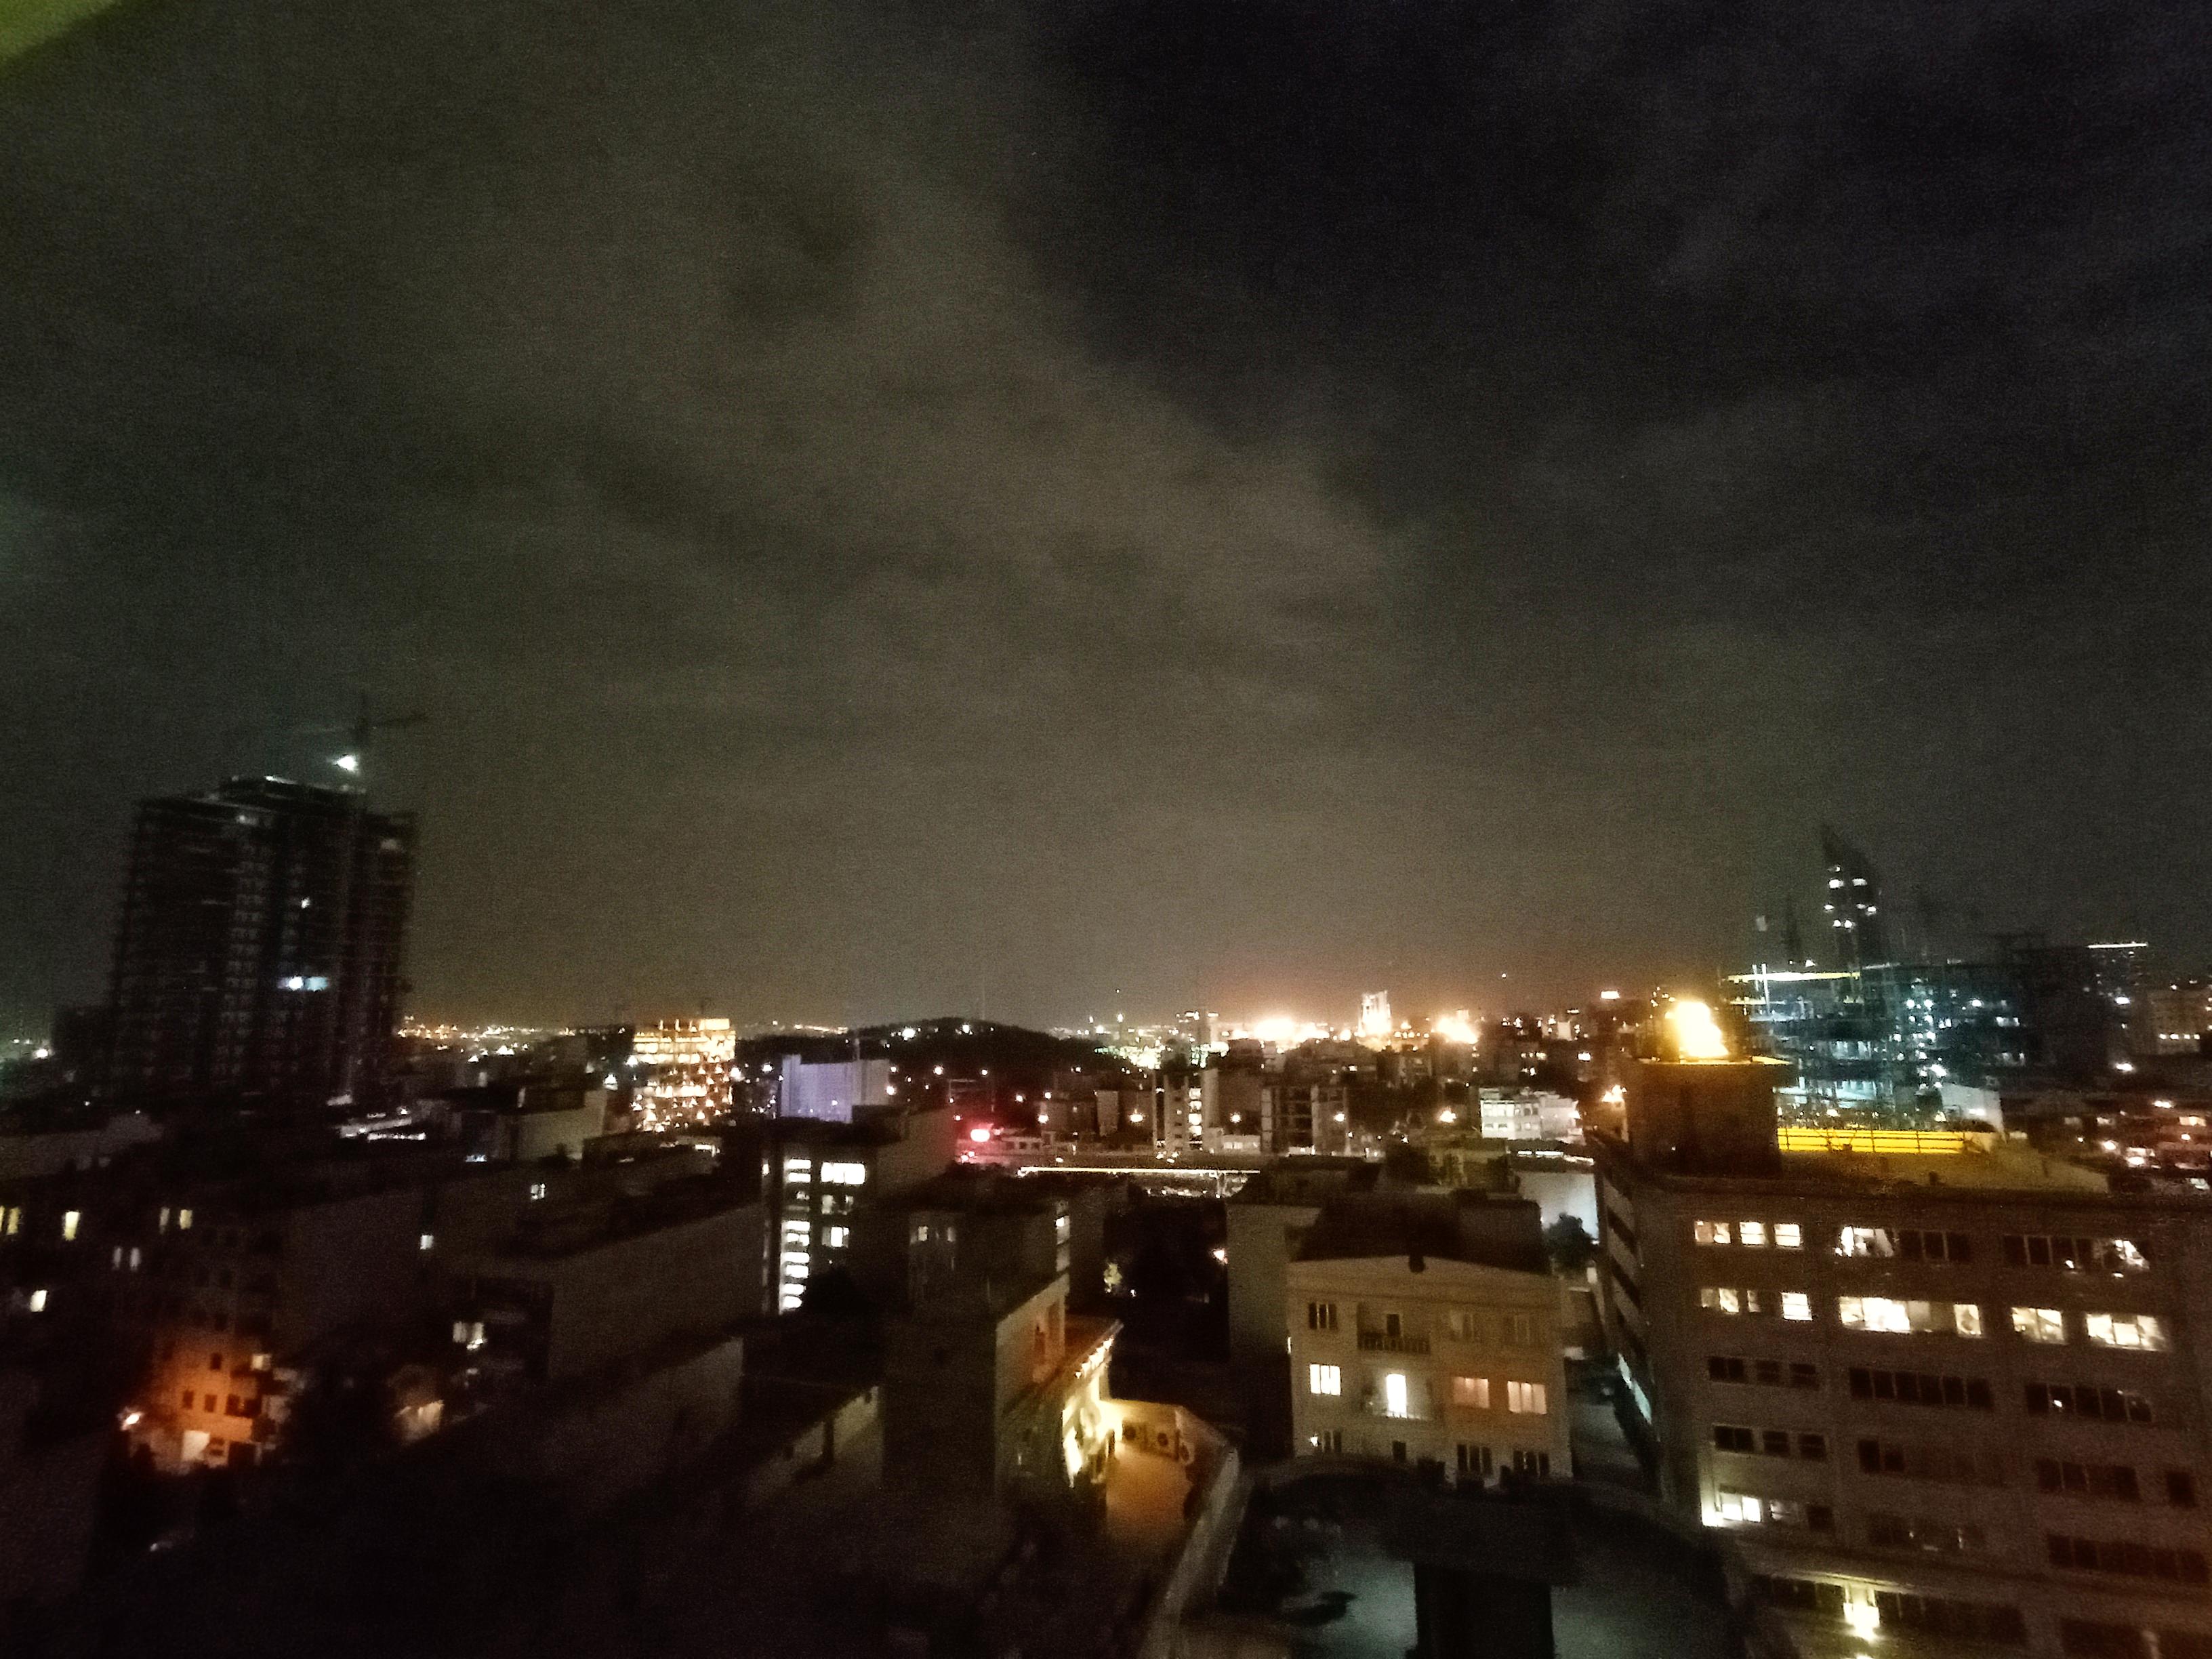 نمونه عکس اولتراواید ردمی نوت ۹ در تاریکی - منظره تهران در شب